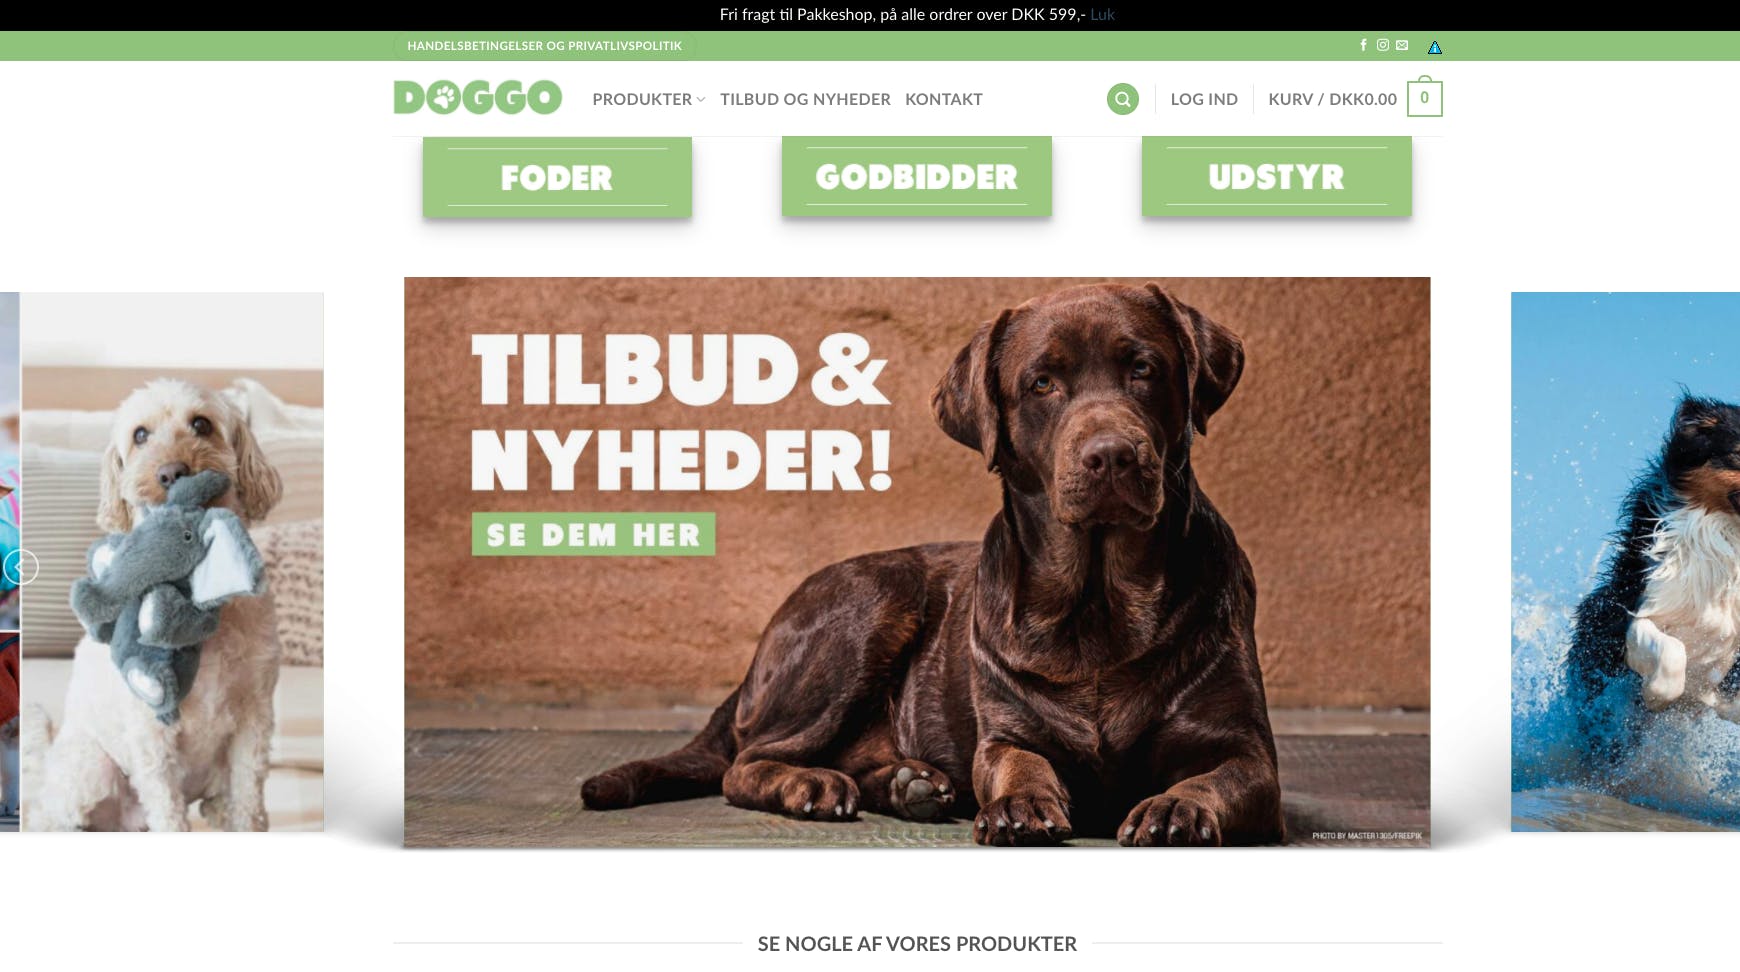 Doggo.dk i vækst med salg af hunde udstyr og foder - Saxis